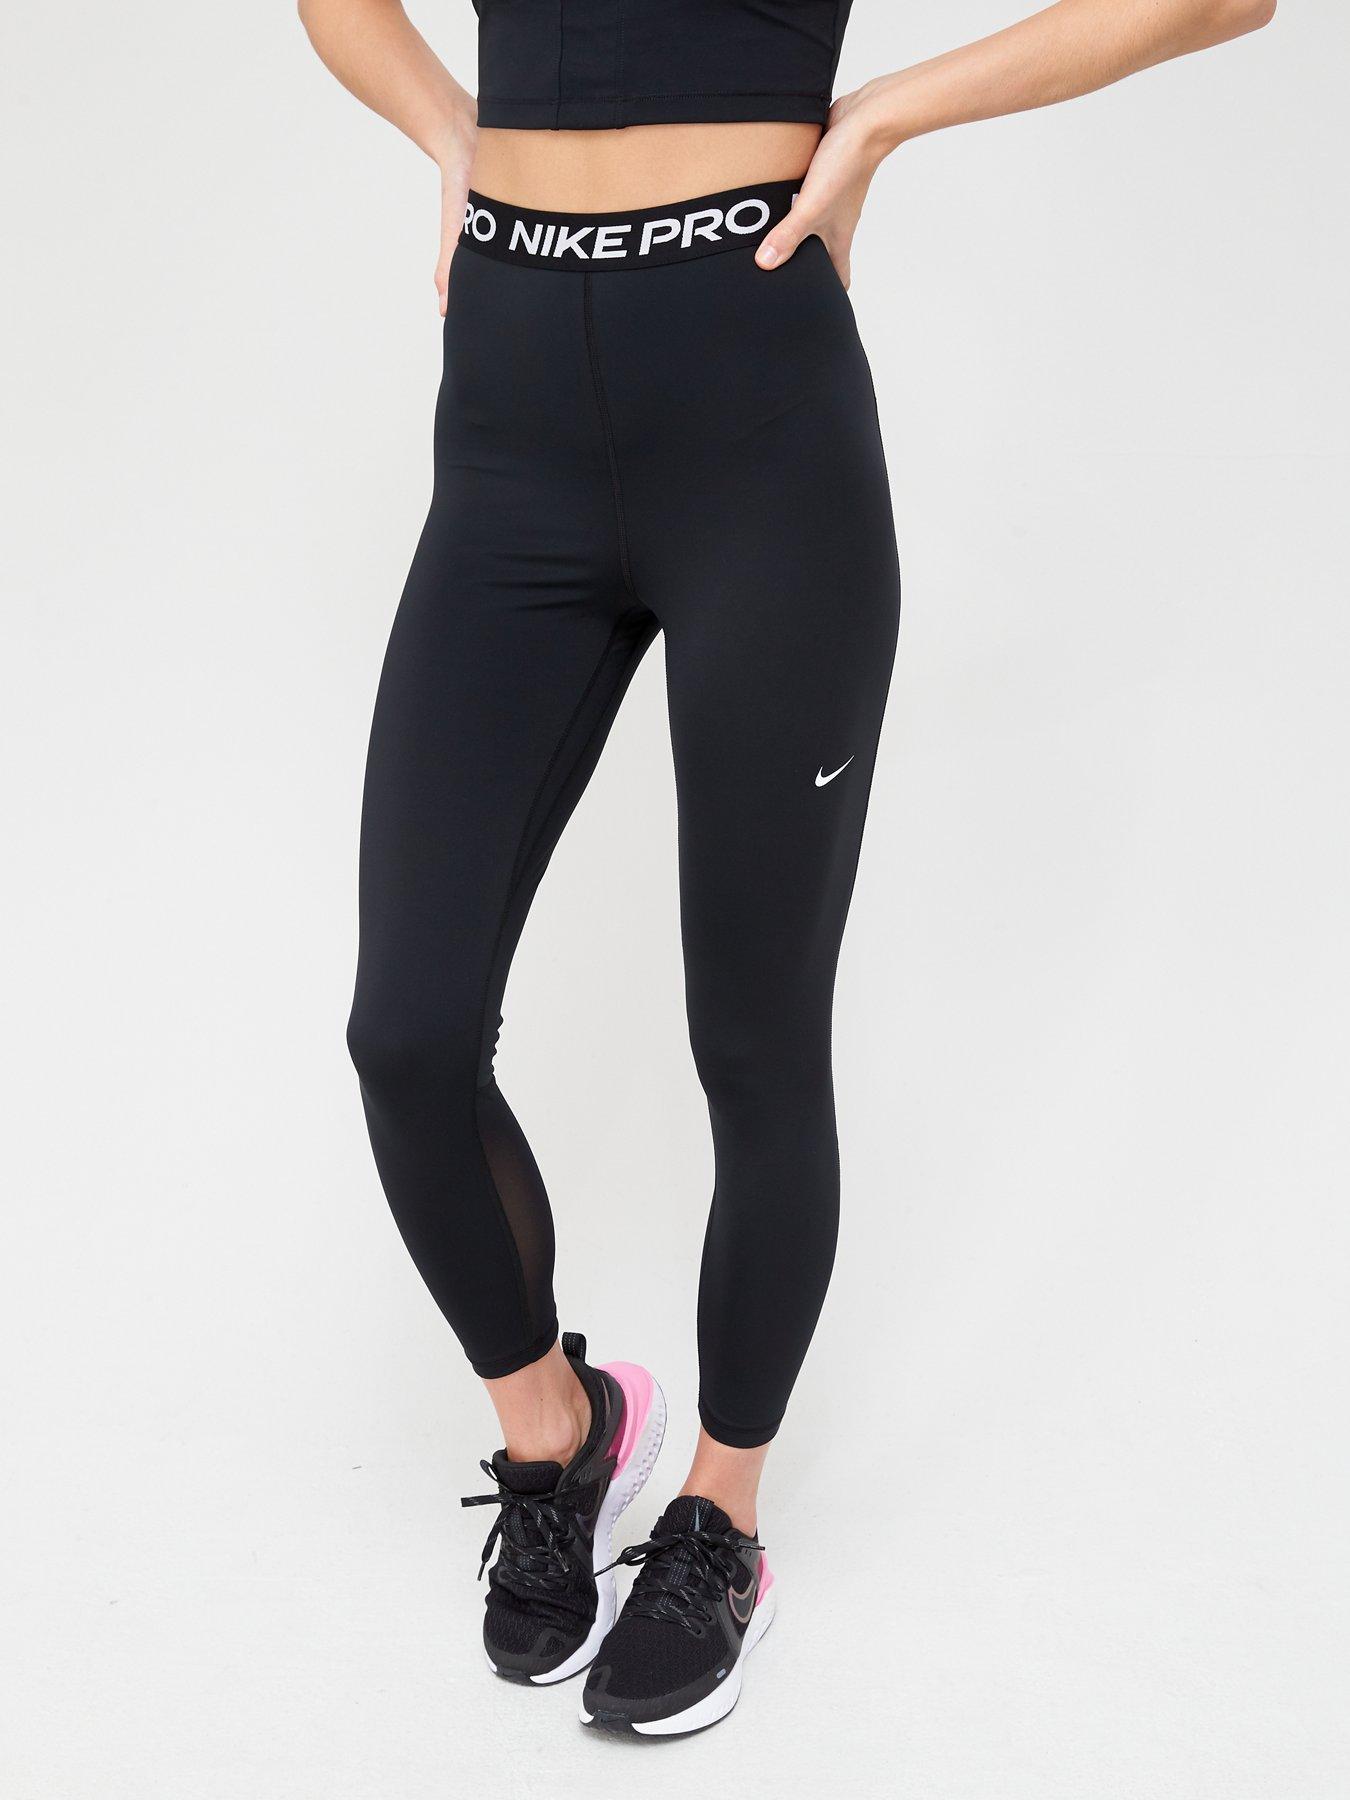 Nike Pro Femme Nvlty Women's 7/8 Leggings Gray, Outlet